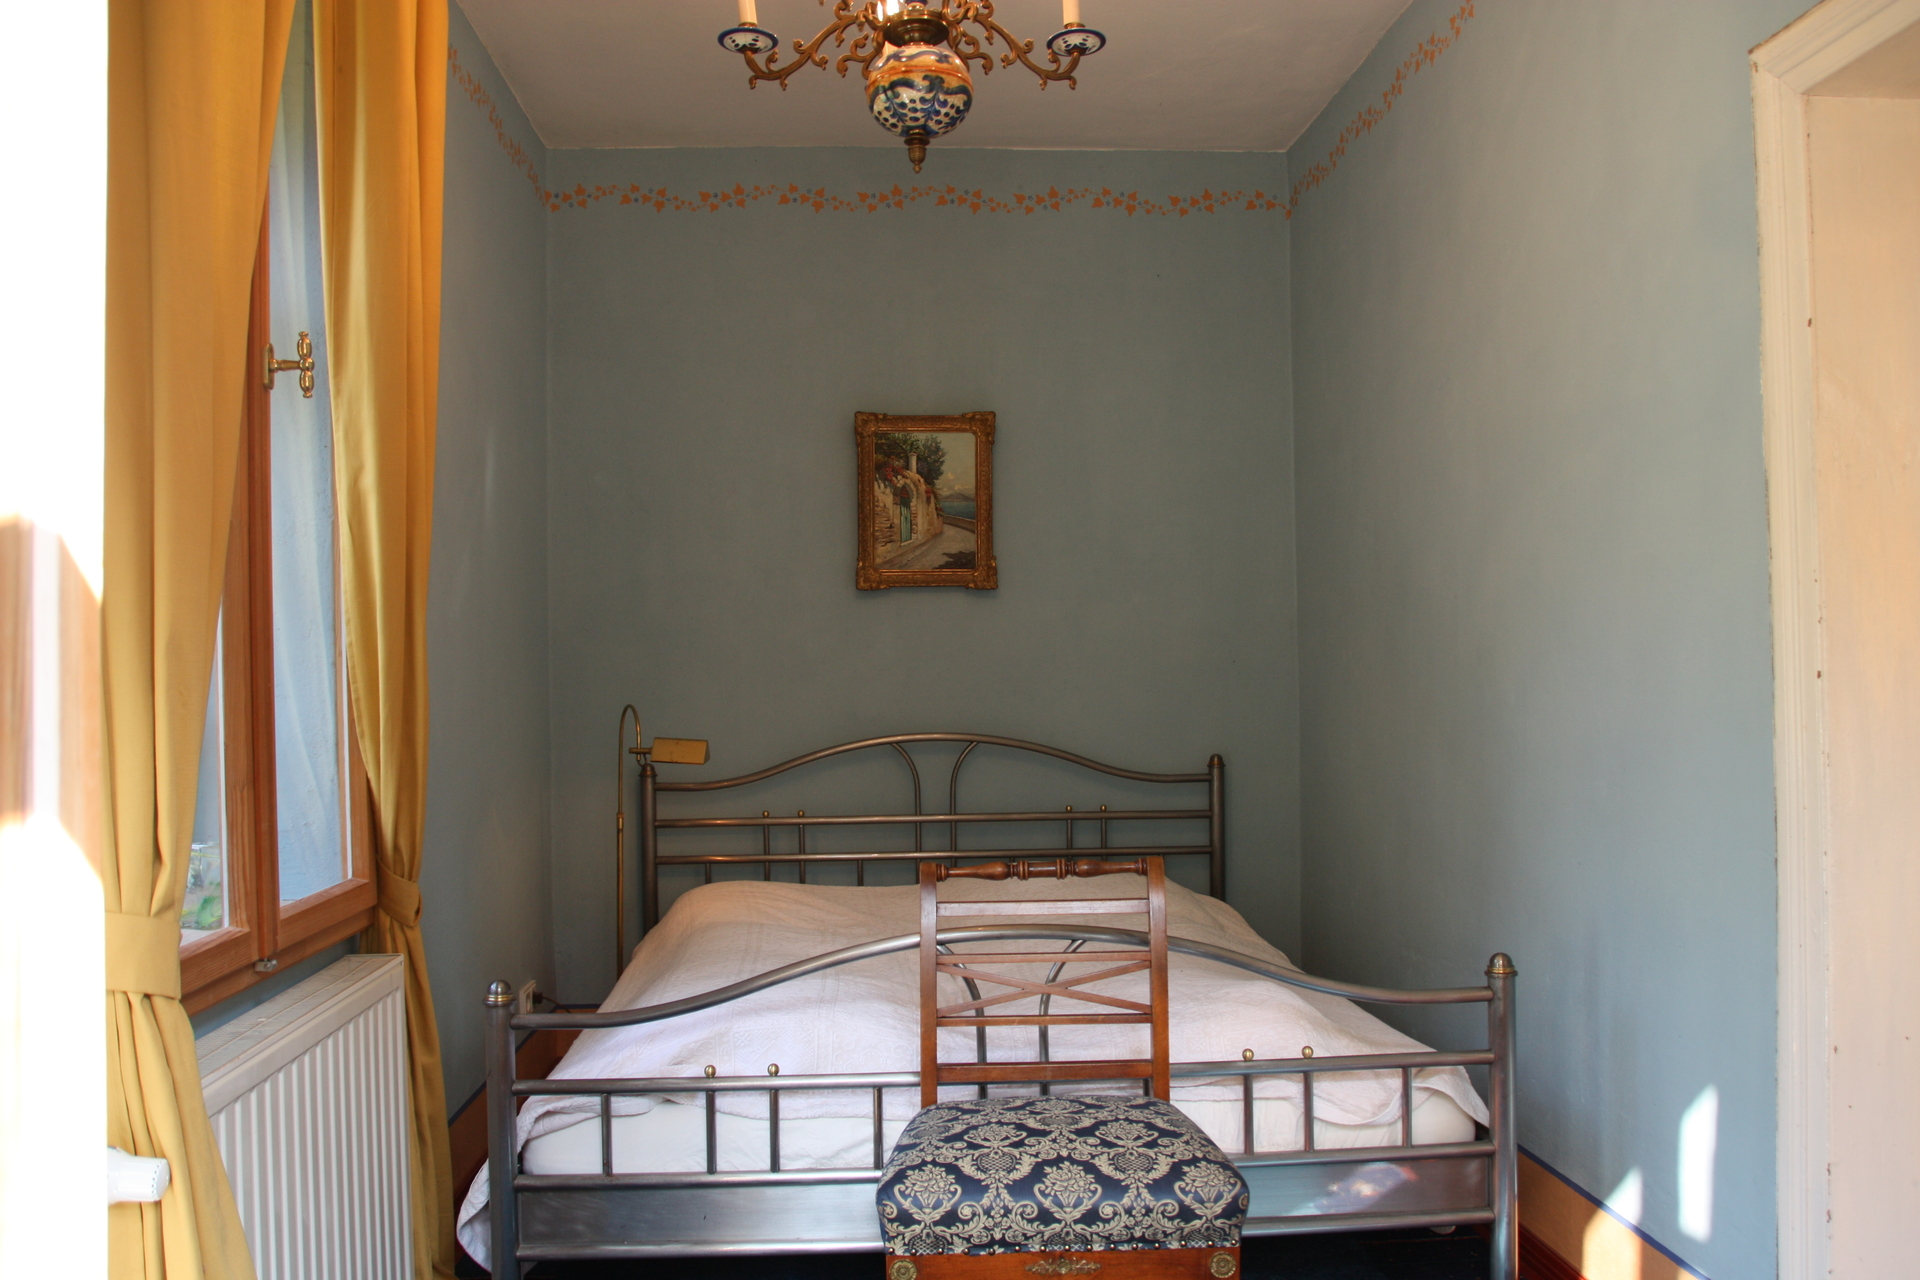 Bild: Schlafzimmer mit Doppelbett 200 x 160 cm